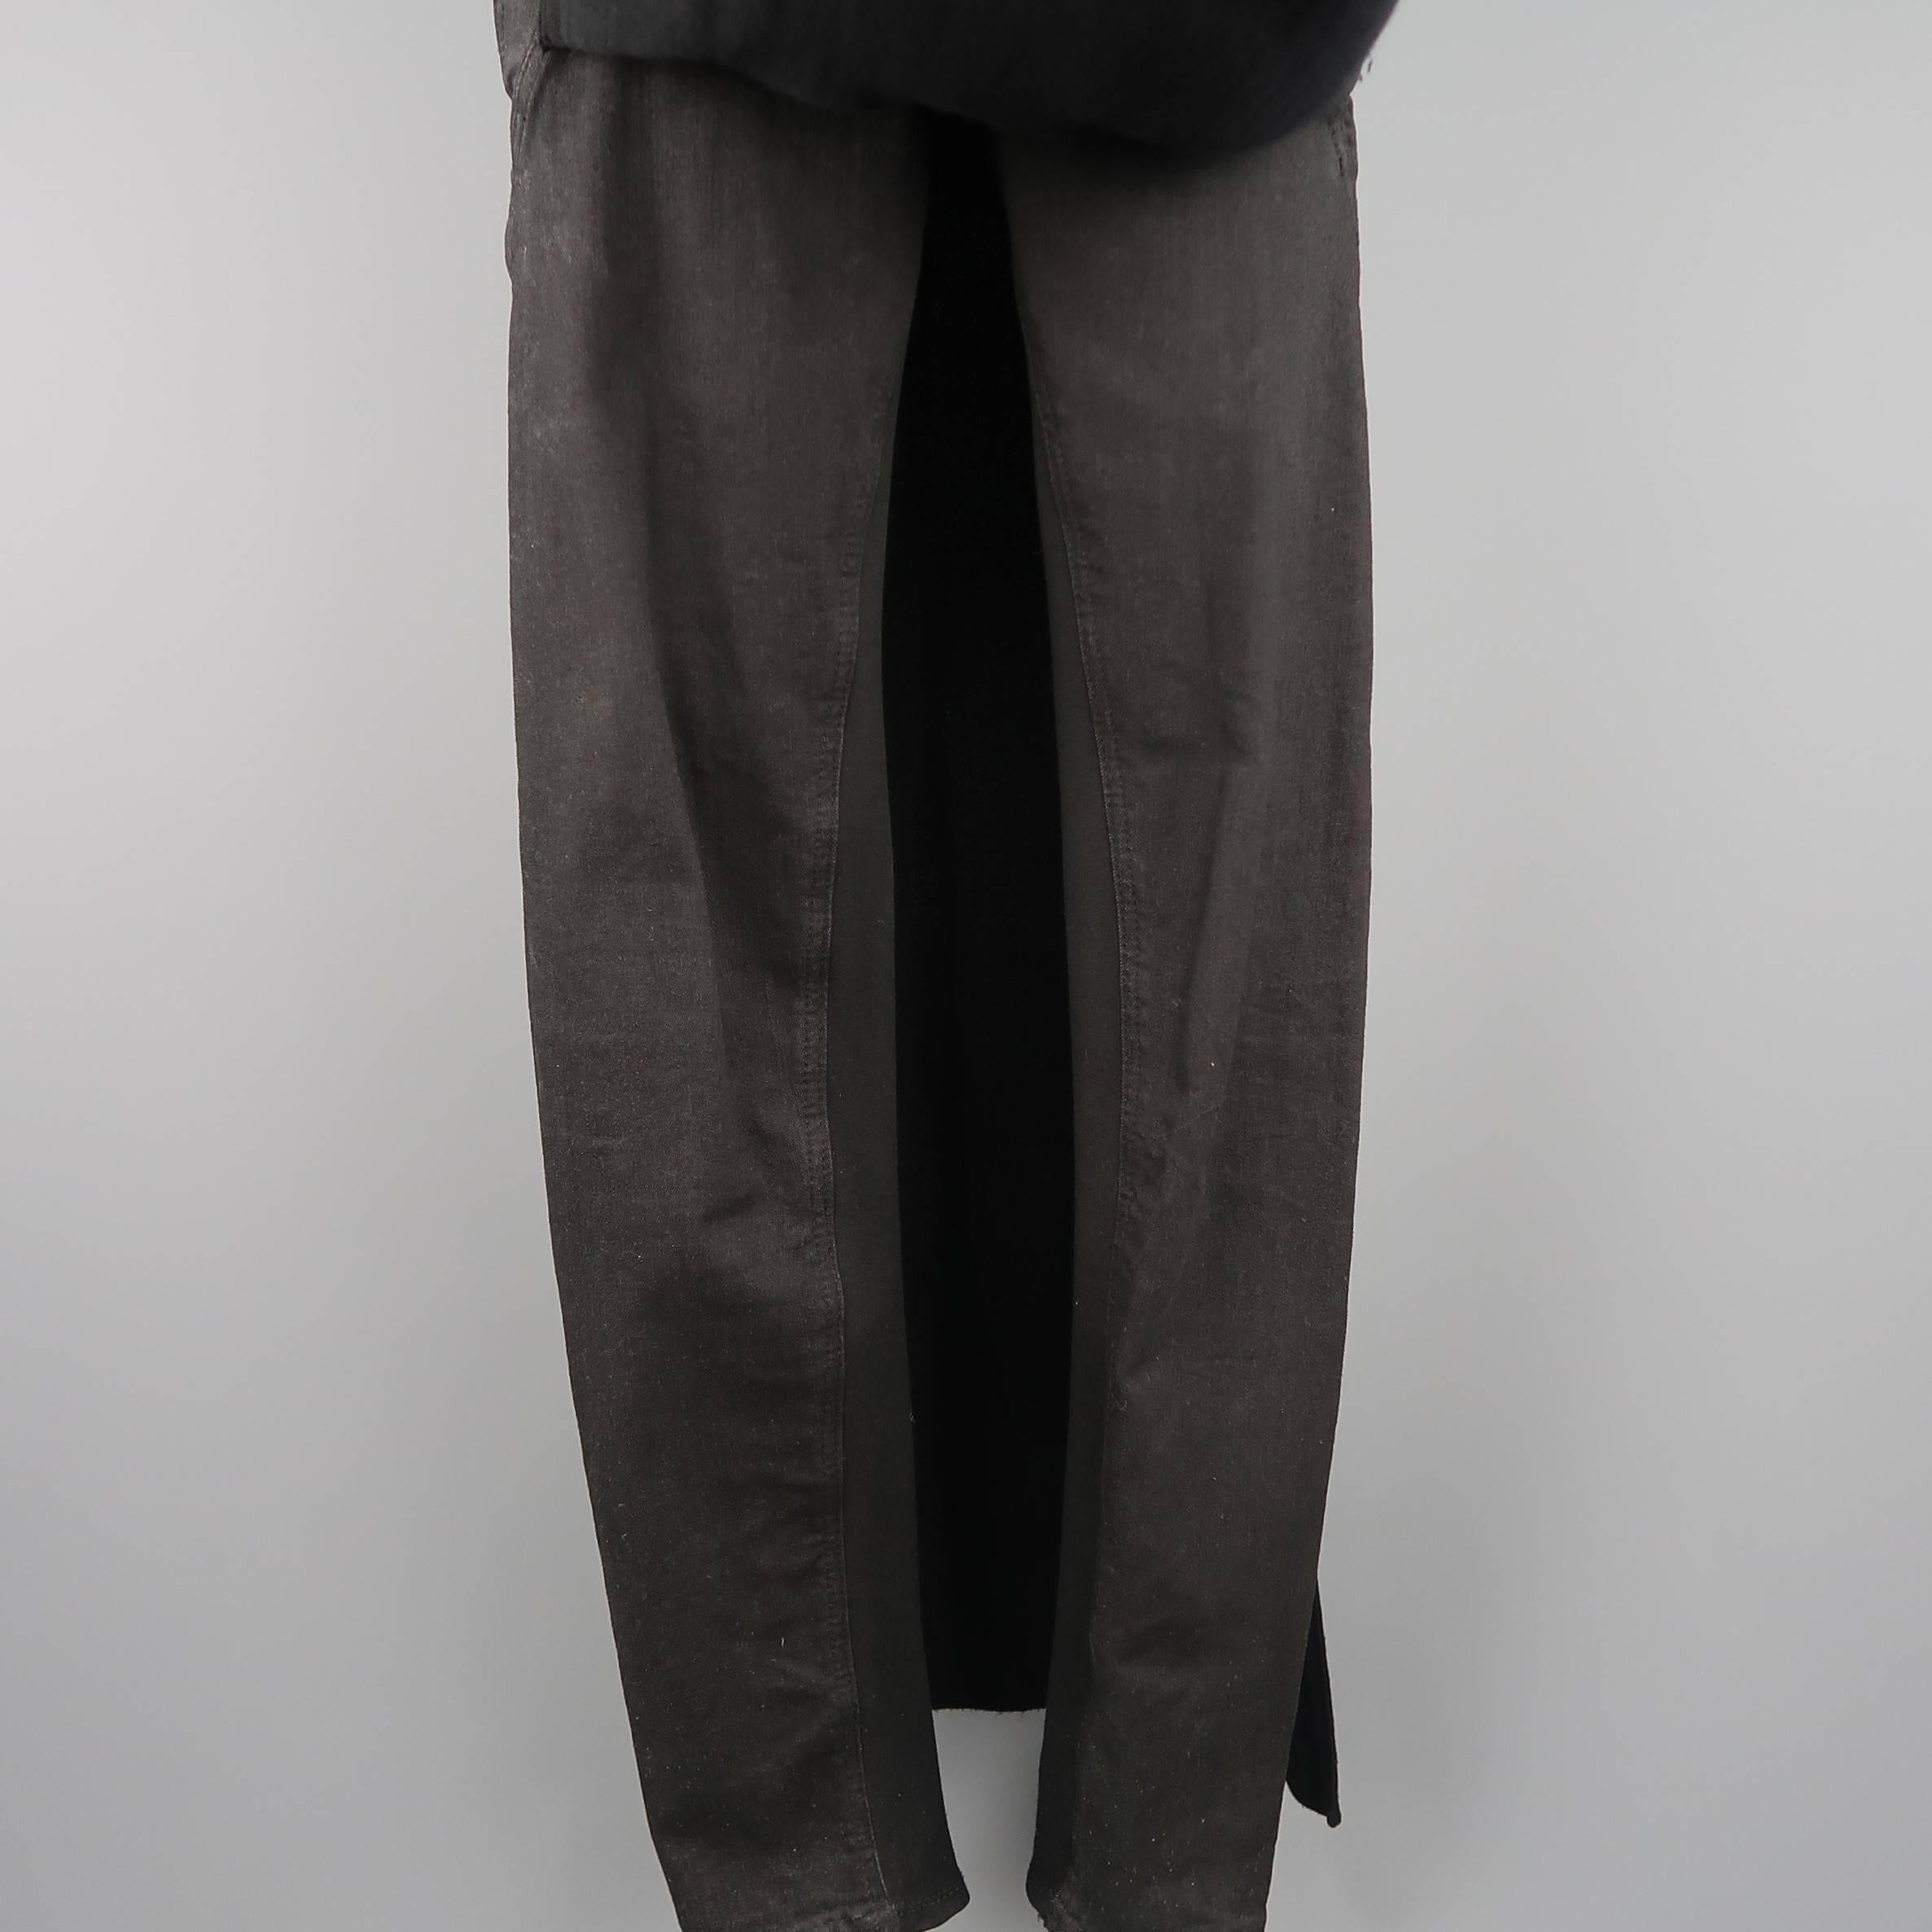 pants with skirt panel